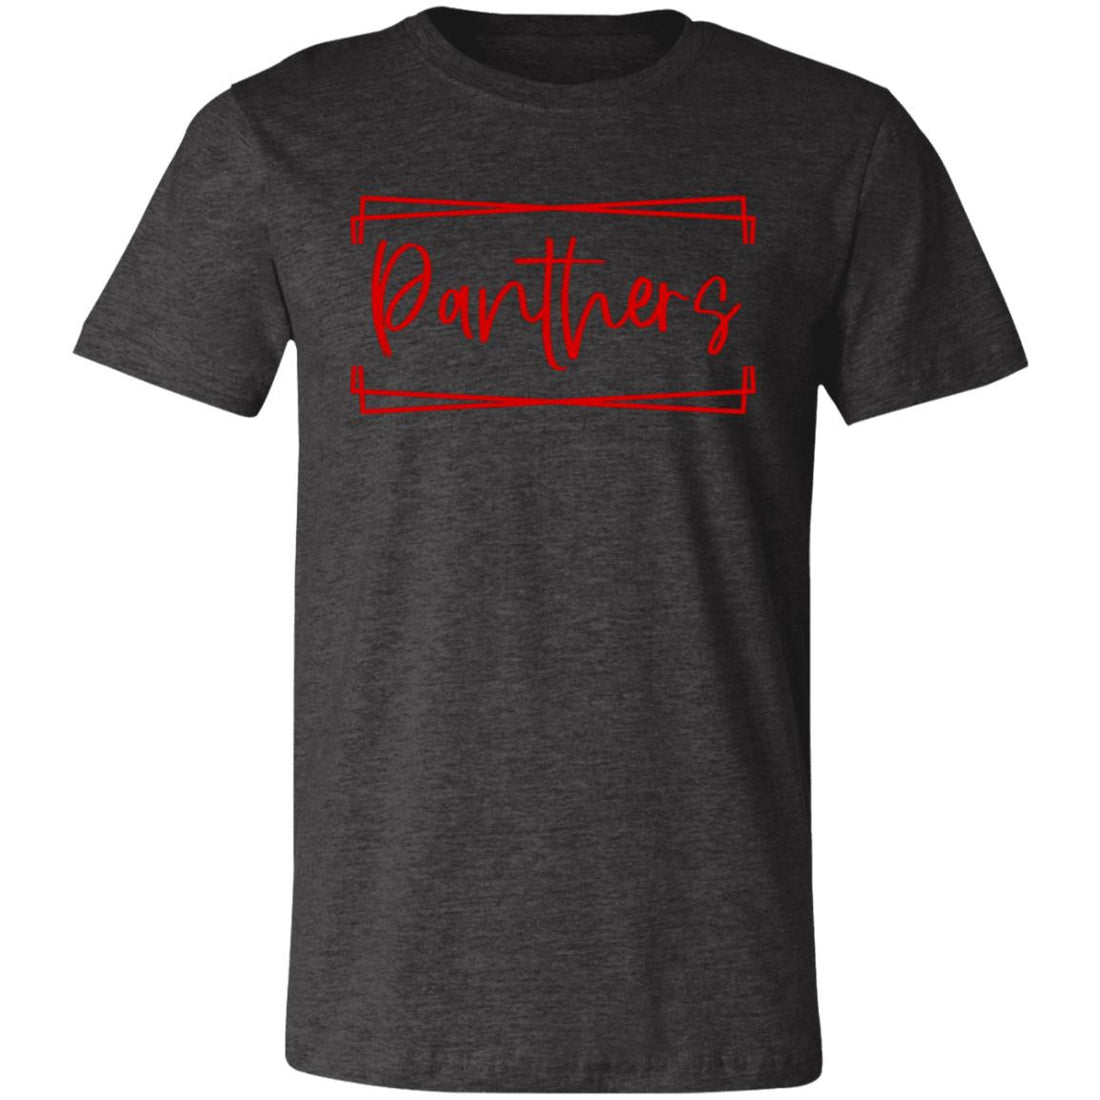 Panthers Box T-Shirt - T-Shirts - Positively Sassy - Panthers Box T-Shirt